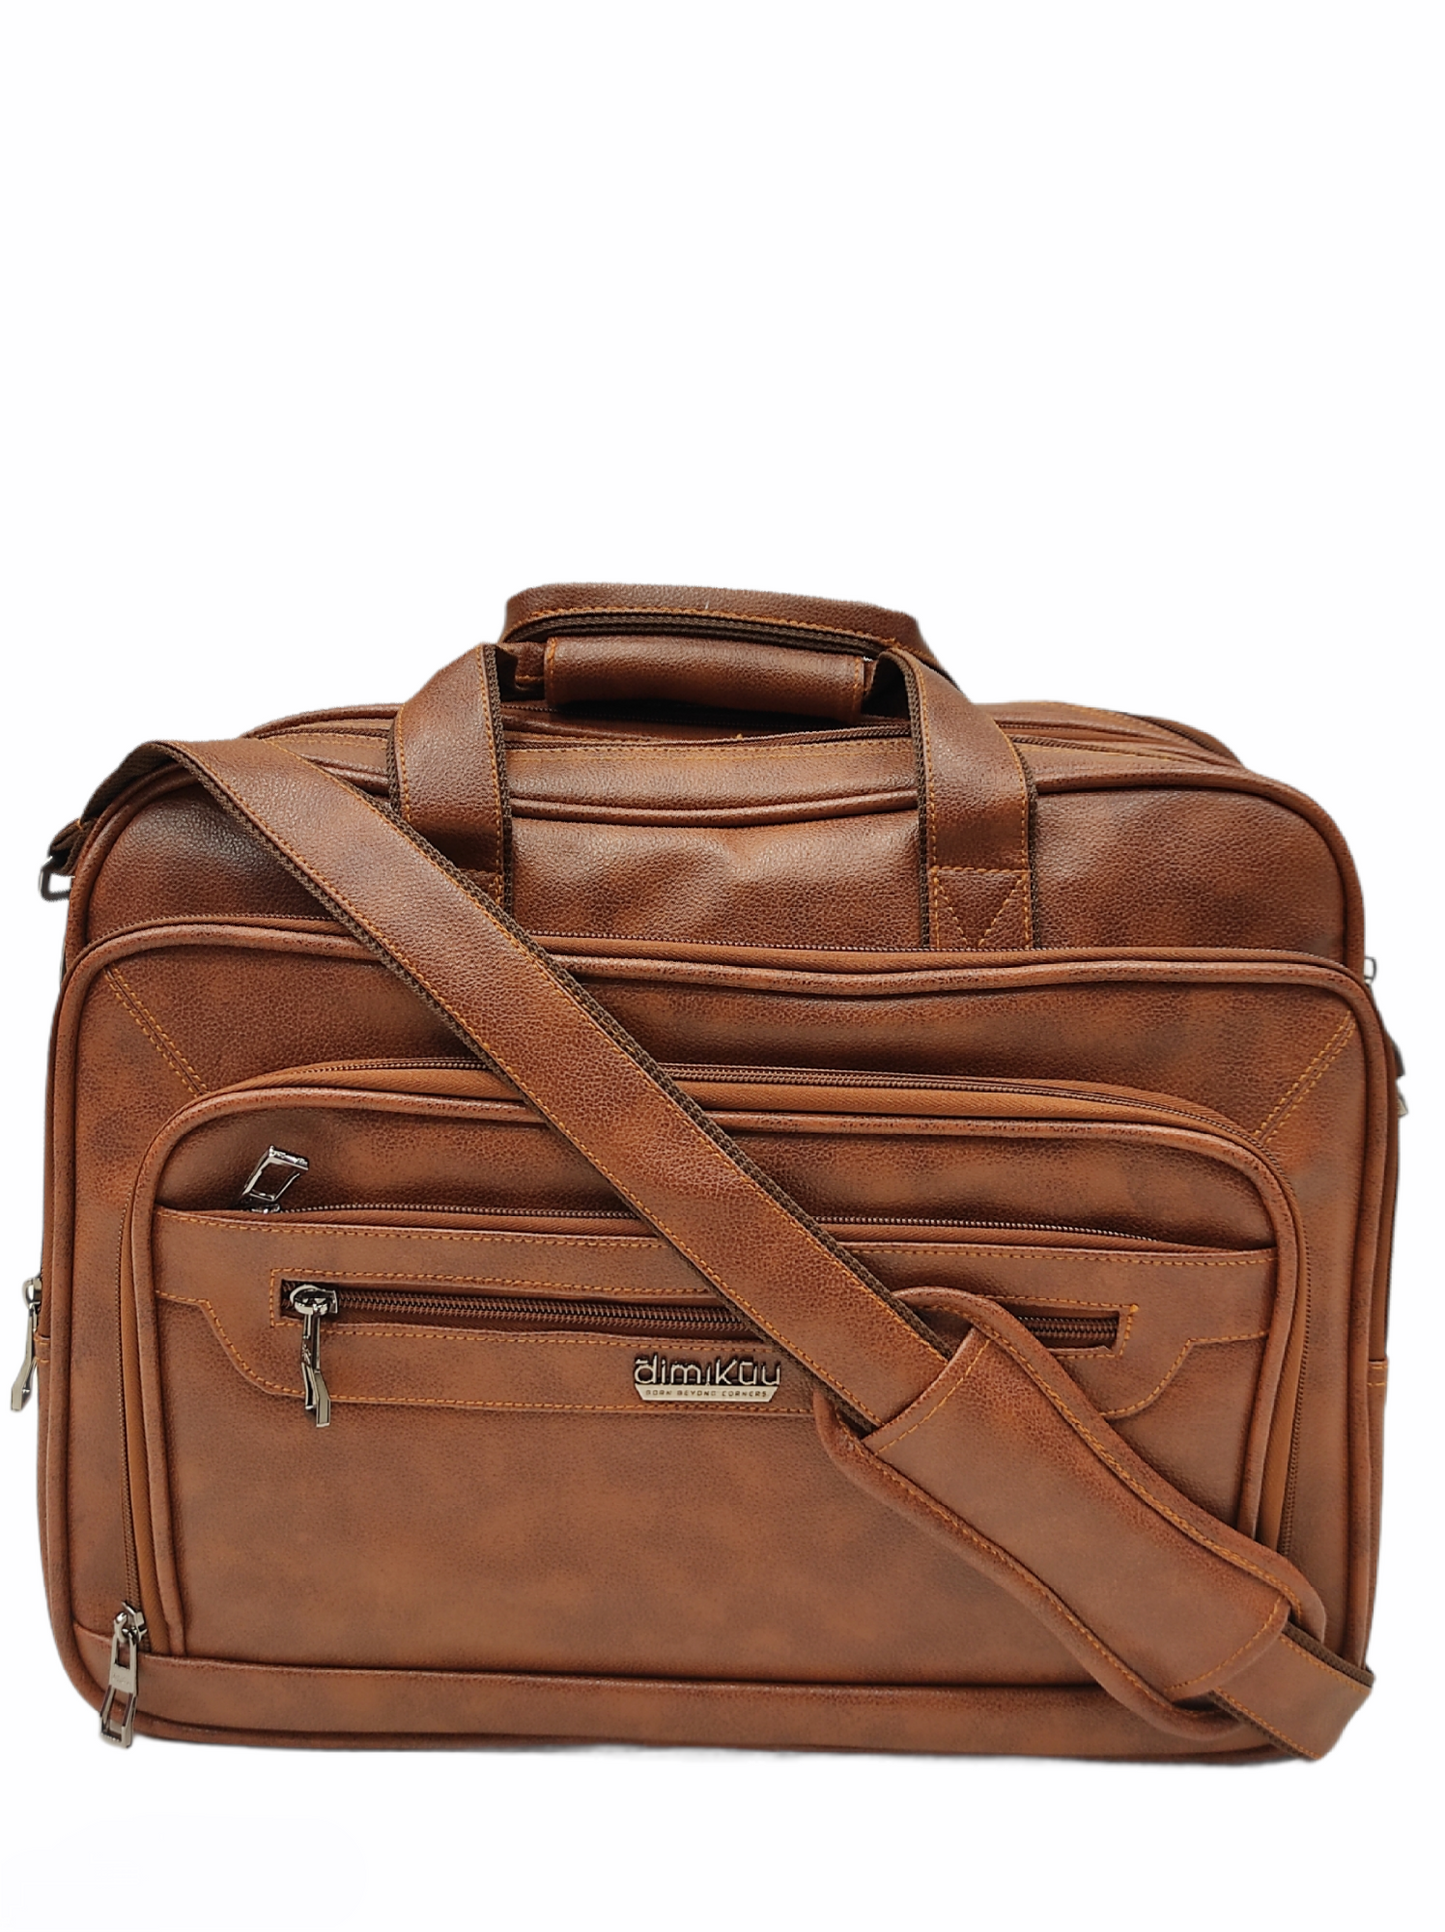 Arihant bag center's laptop bag,travel bag